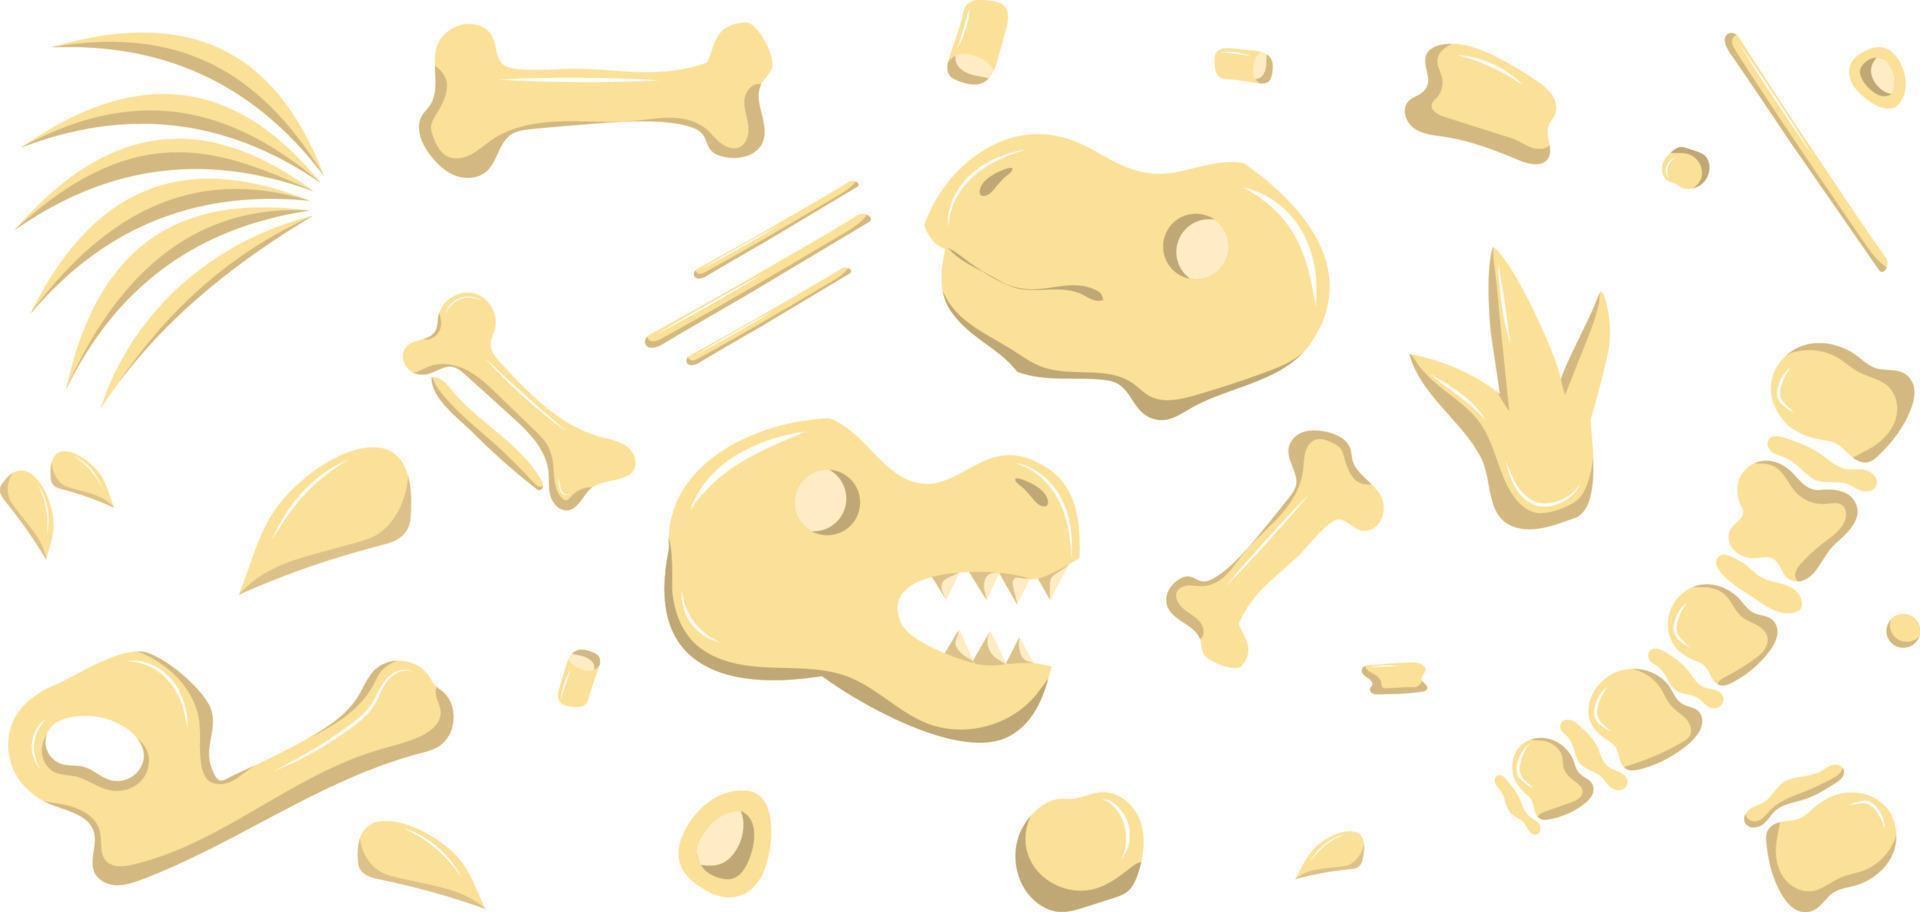 dinosaur bones are broken down in parts vector